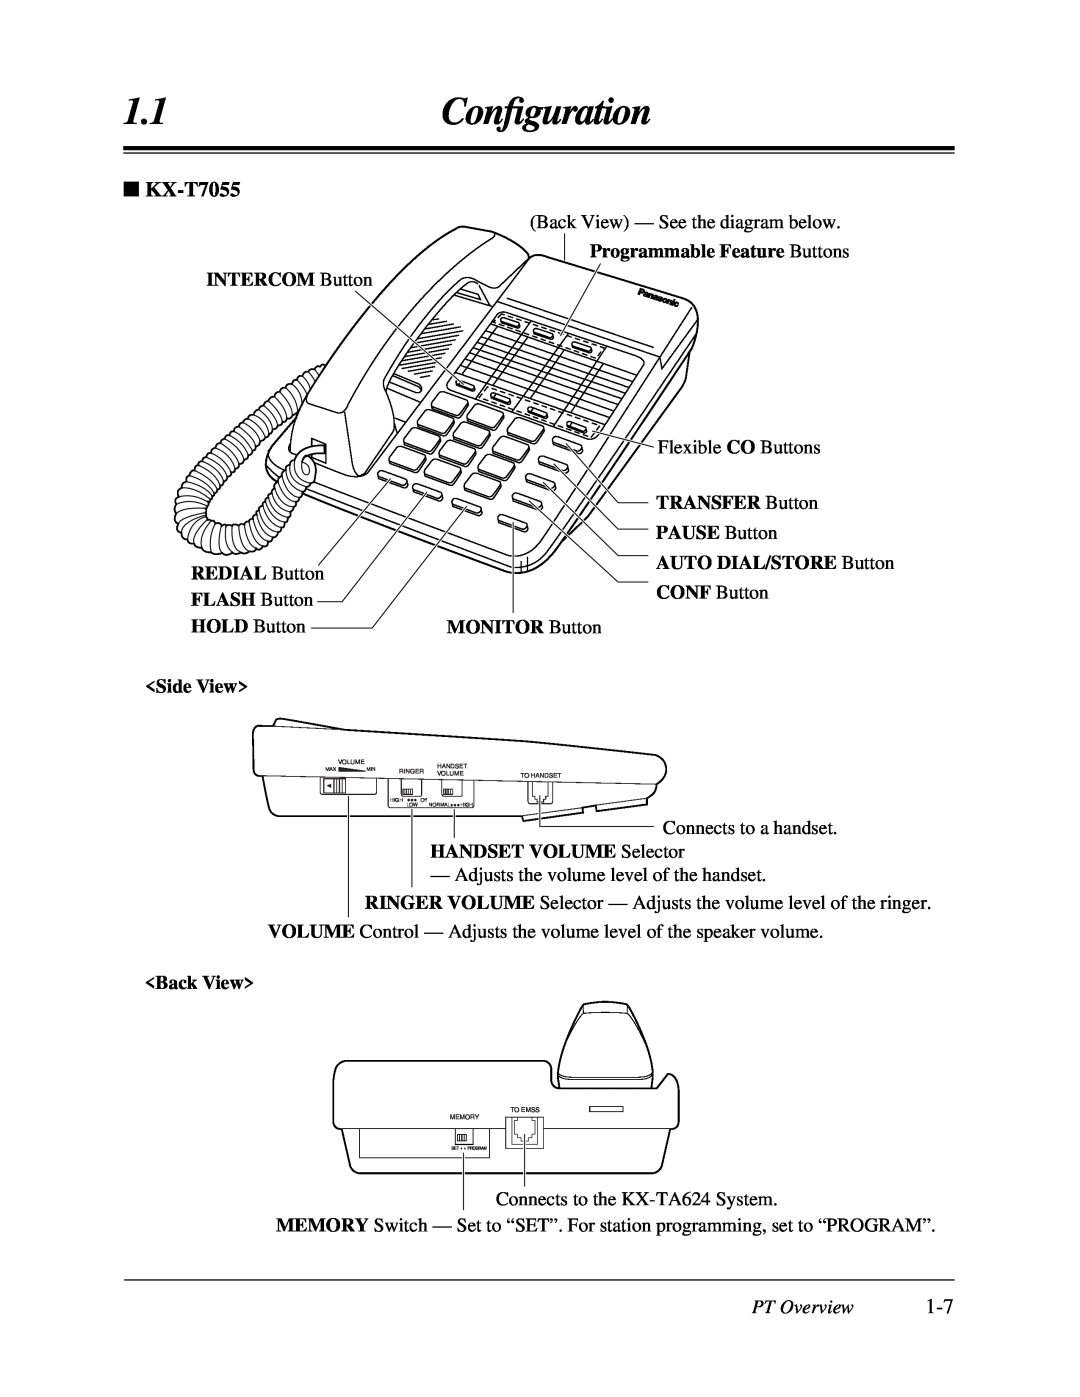 Panasonic KX-TA624 user manual KX-T7055, 1.1Conﬁguration, PT Overview 